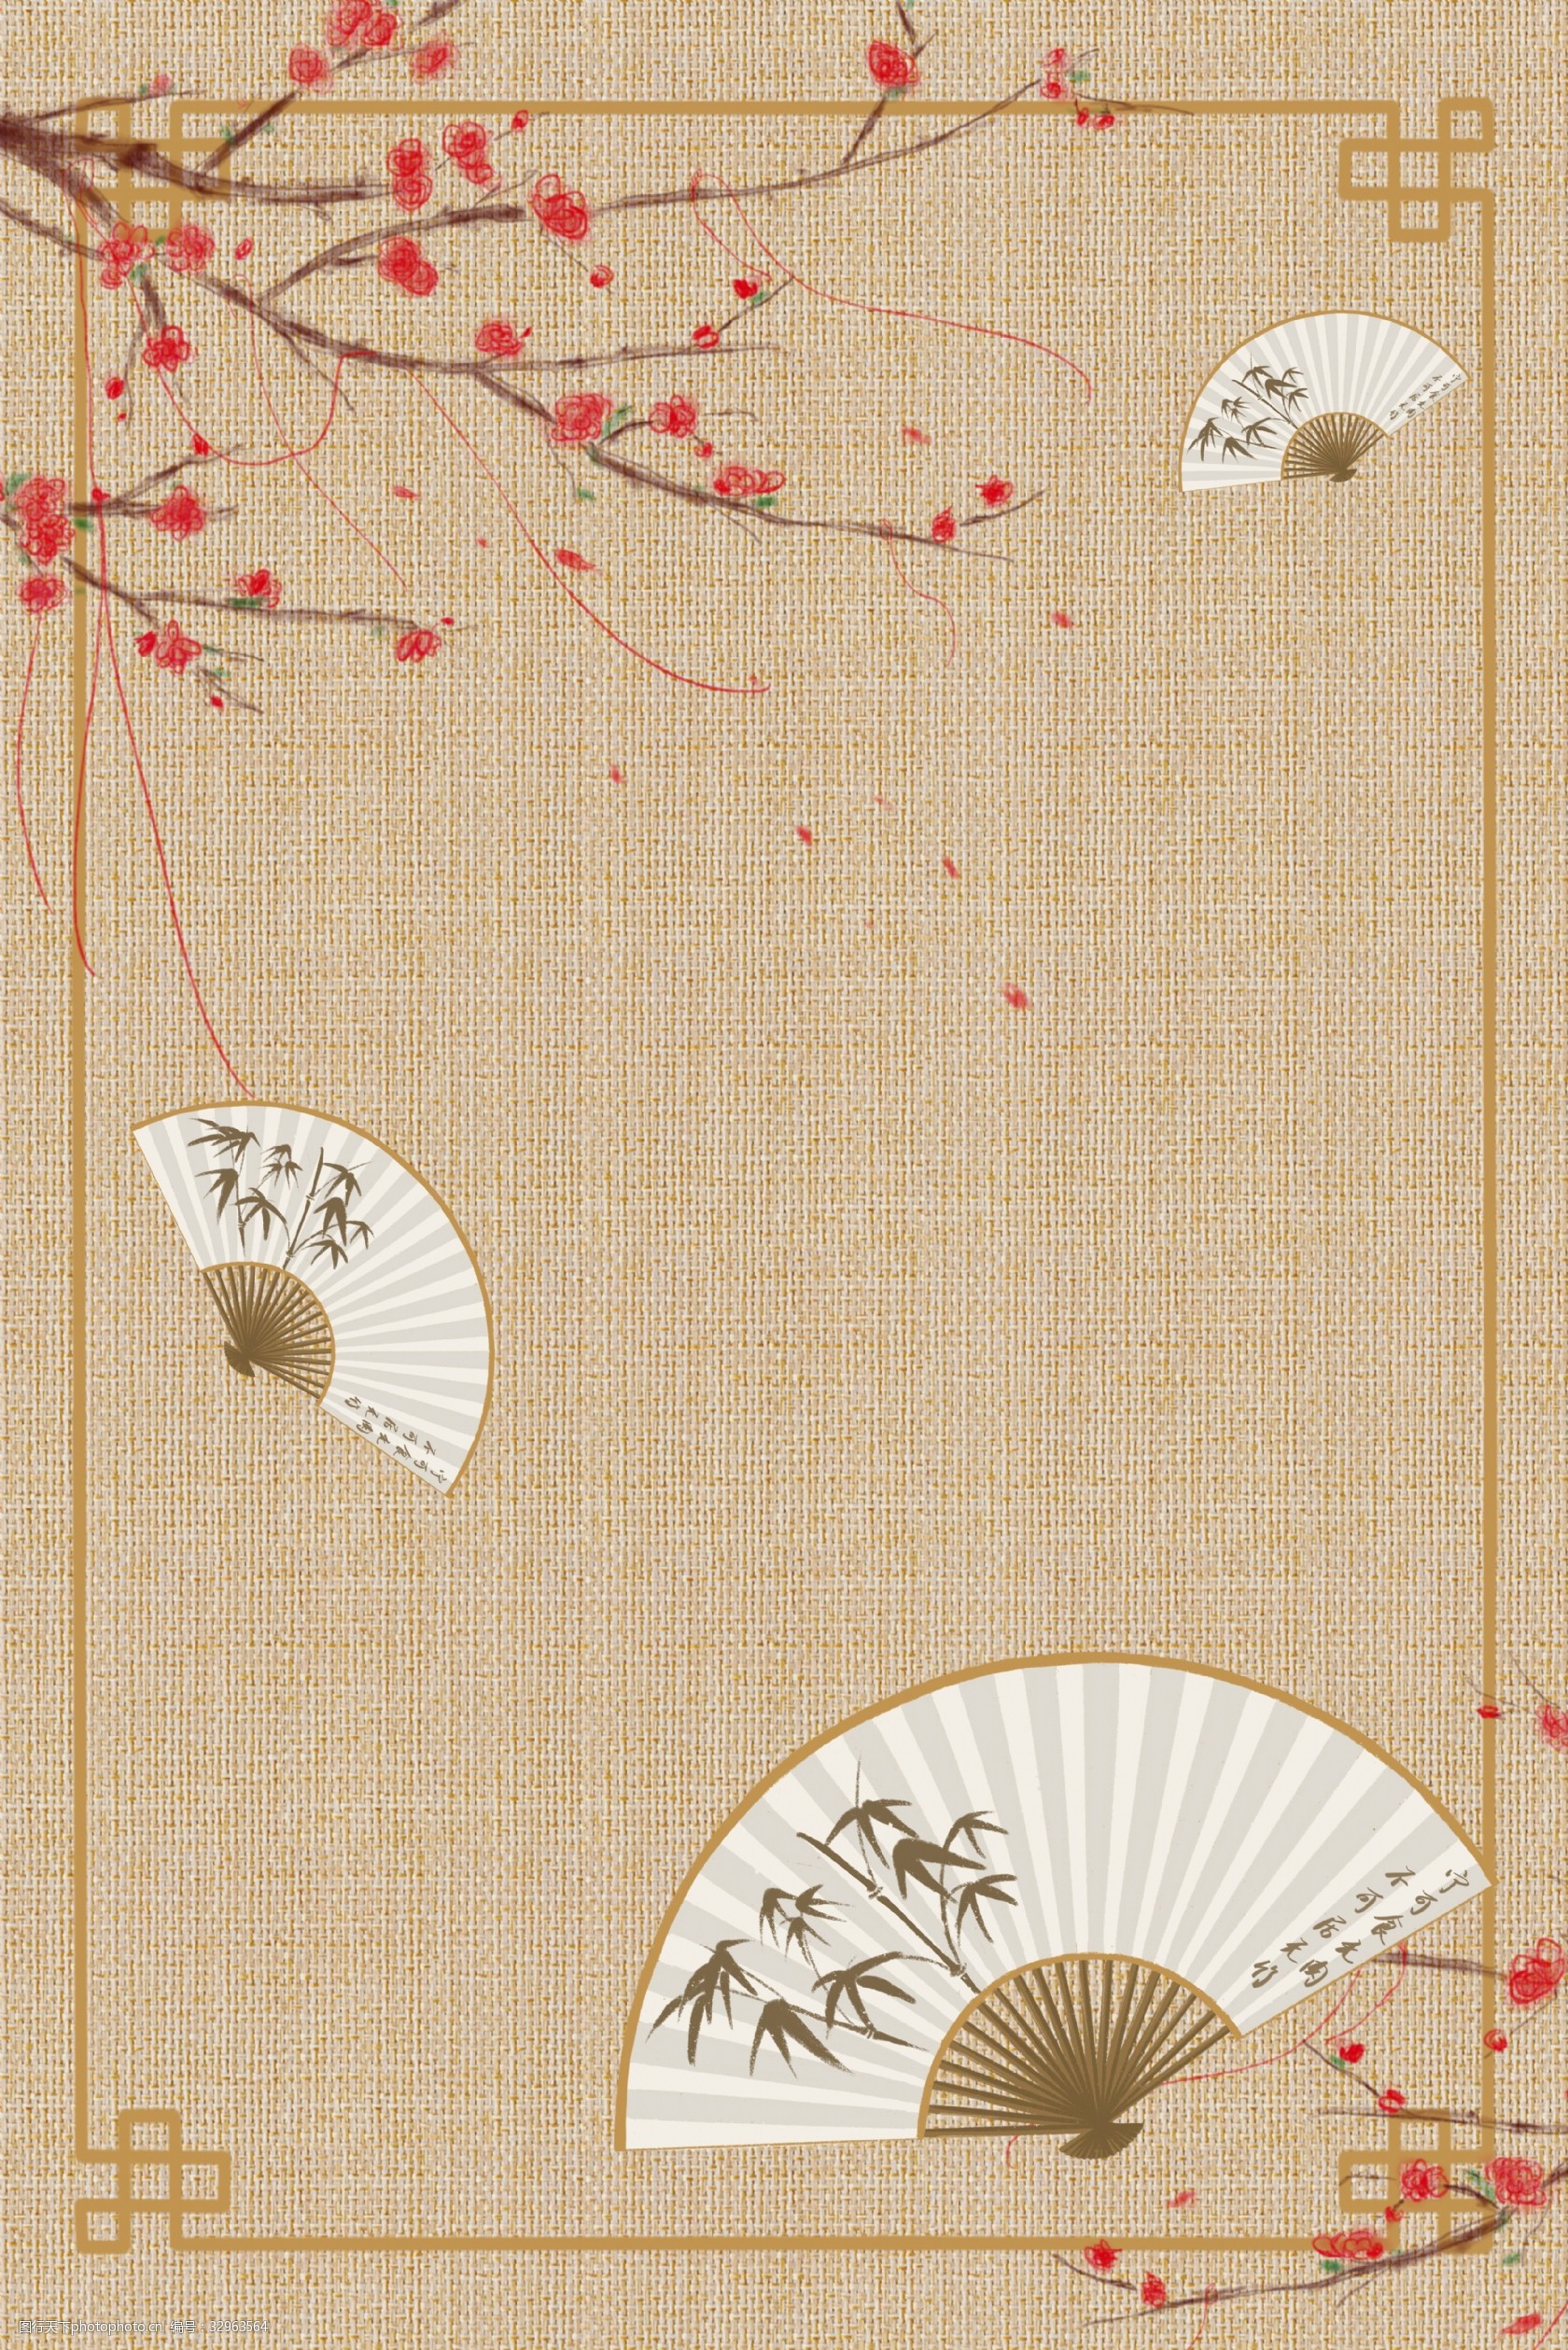 中式古典远山花卉工笔画古风背景